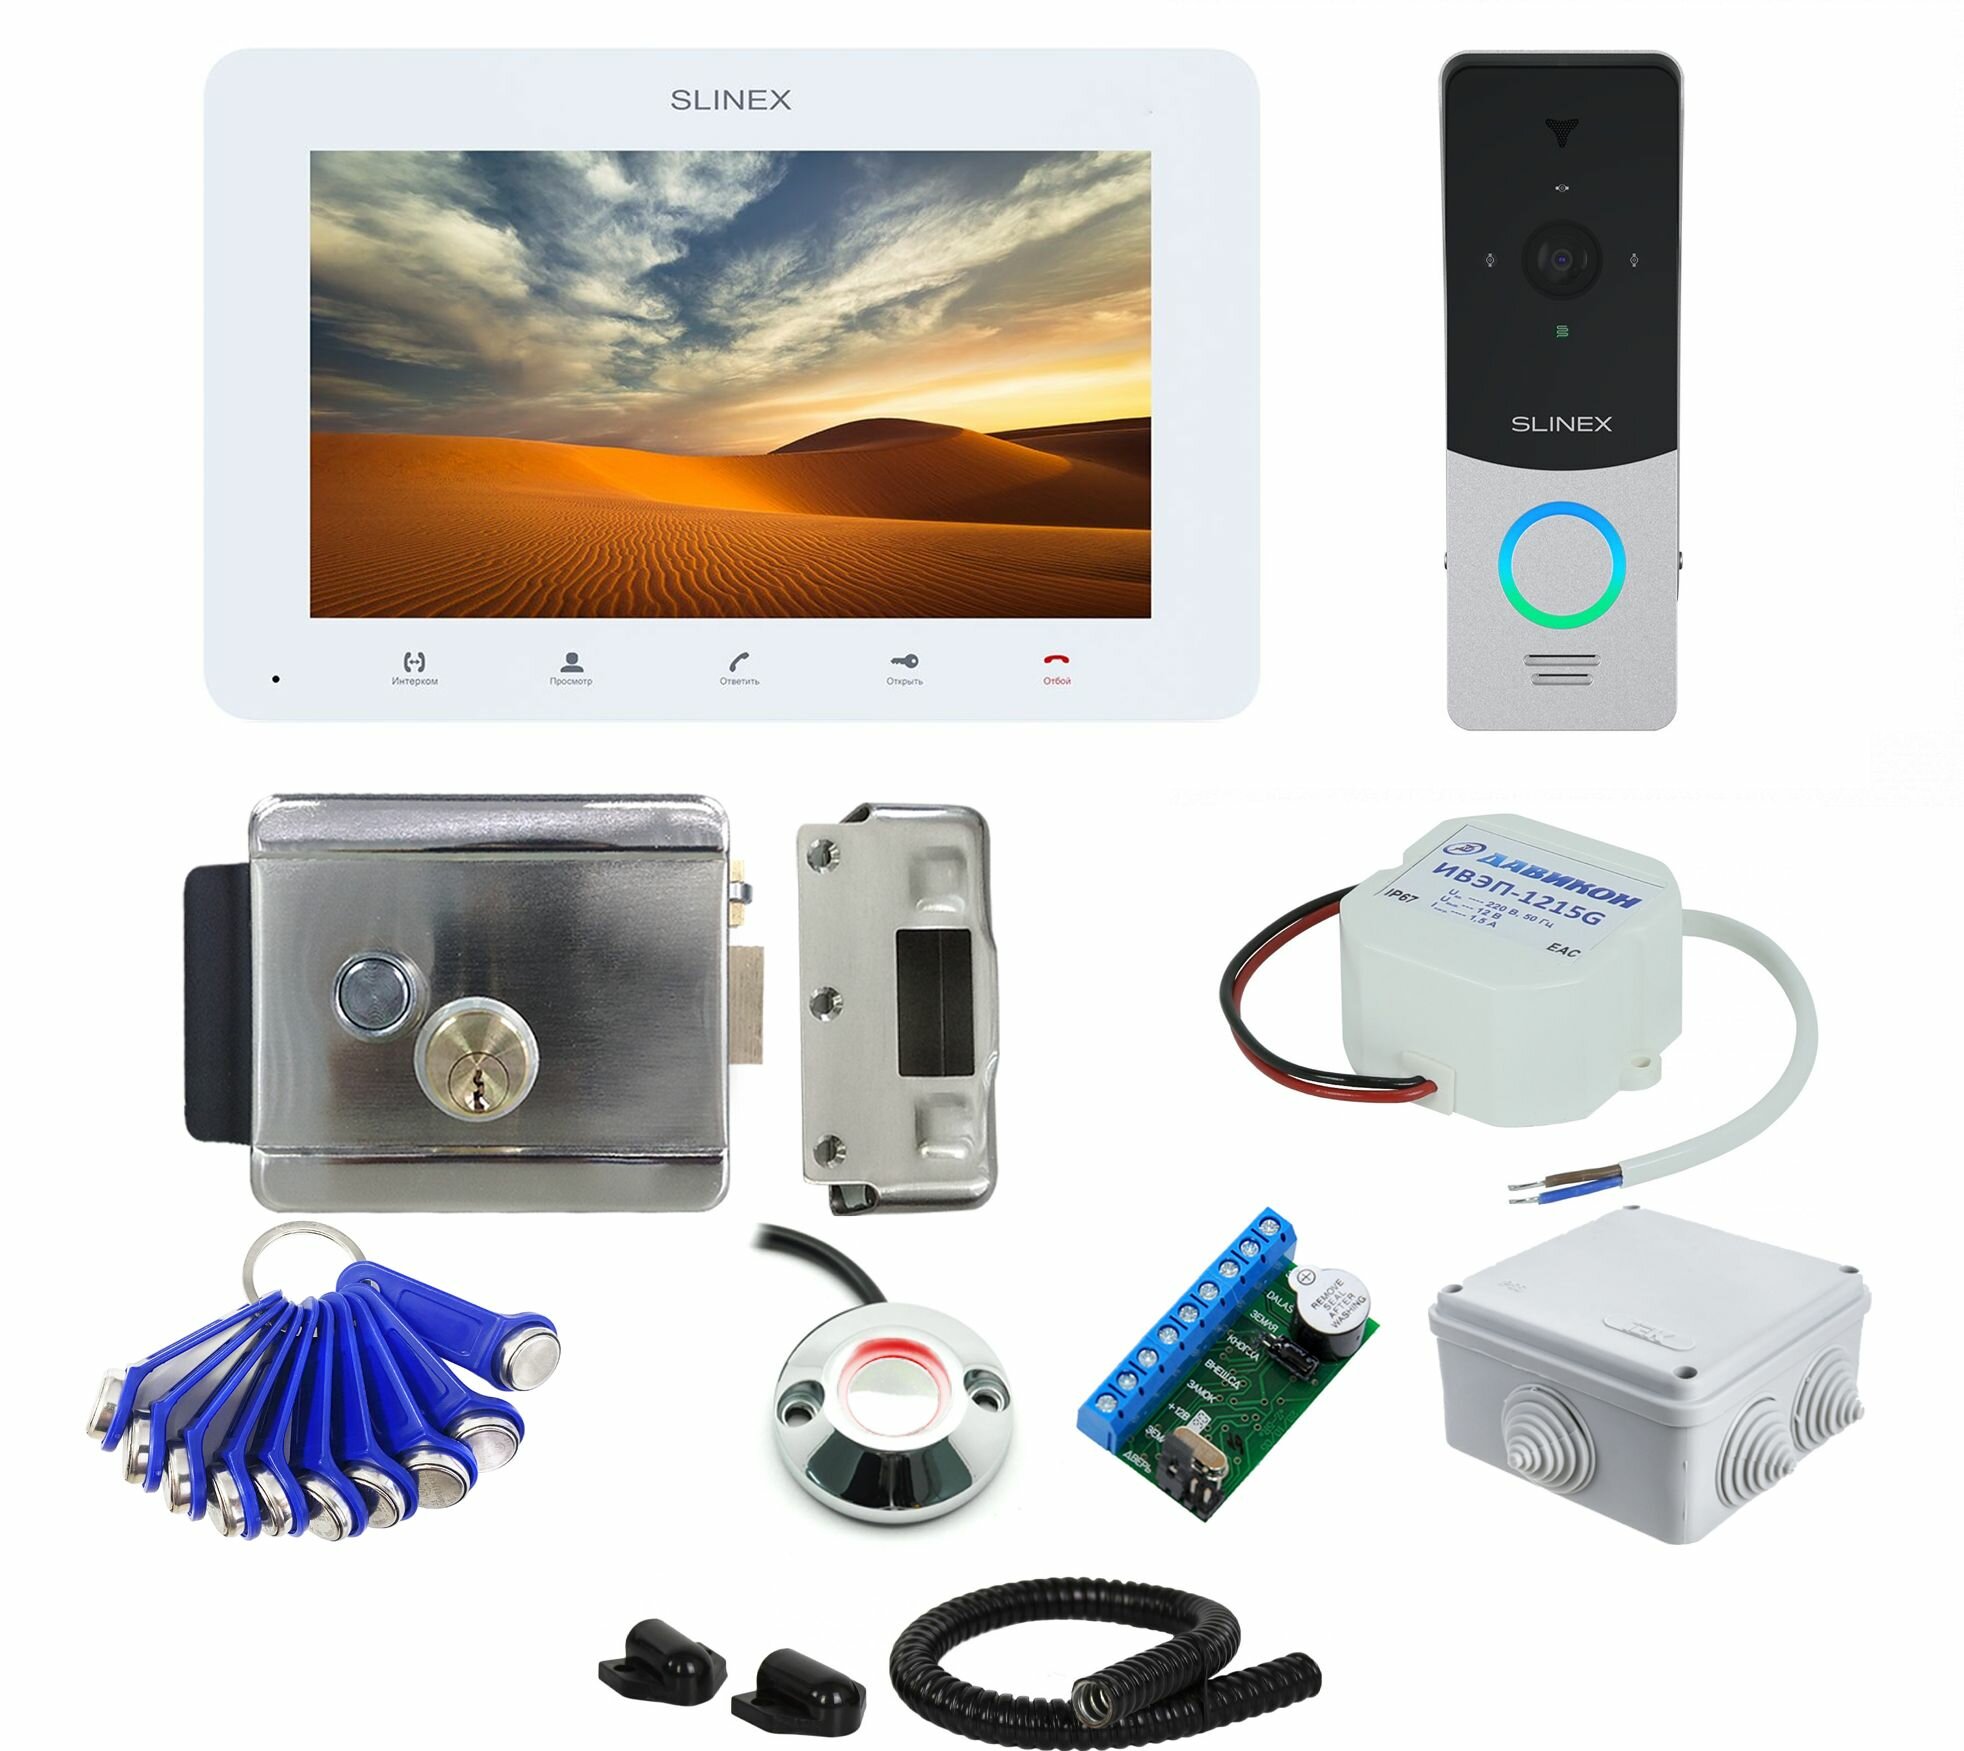 Комплект Full HD видеодомофона со слотом для SD карты Slinex 7" белый с видеопанелью, электромеханическим замком считывателем и ключами TM, дома, магазина, на калитку №53